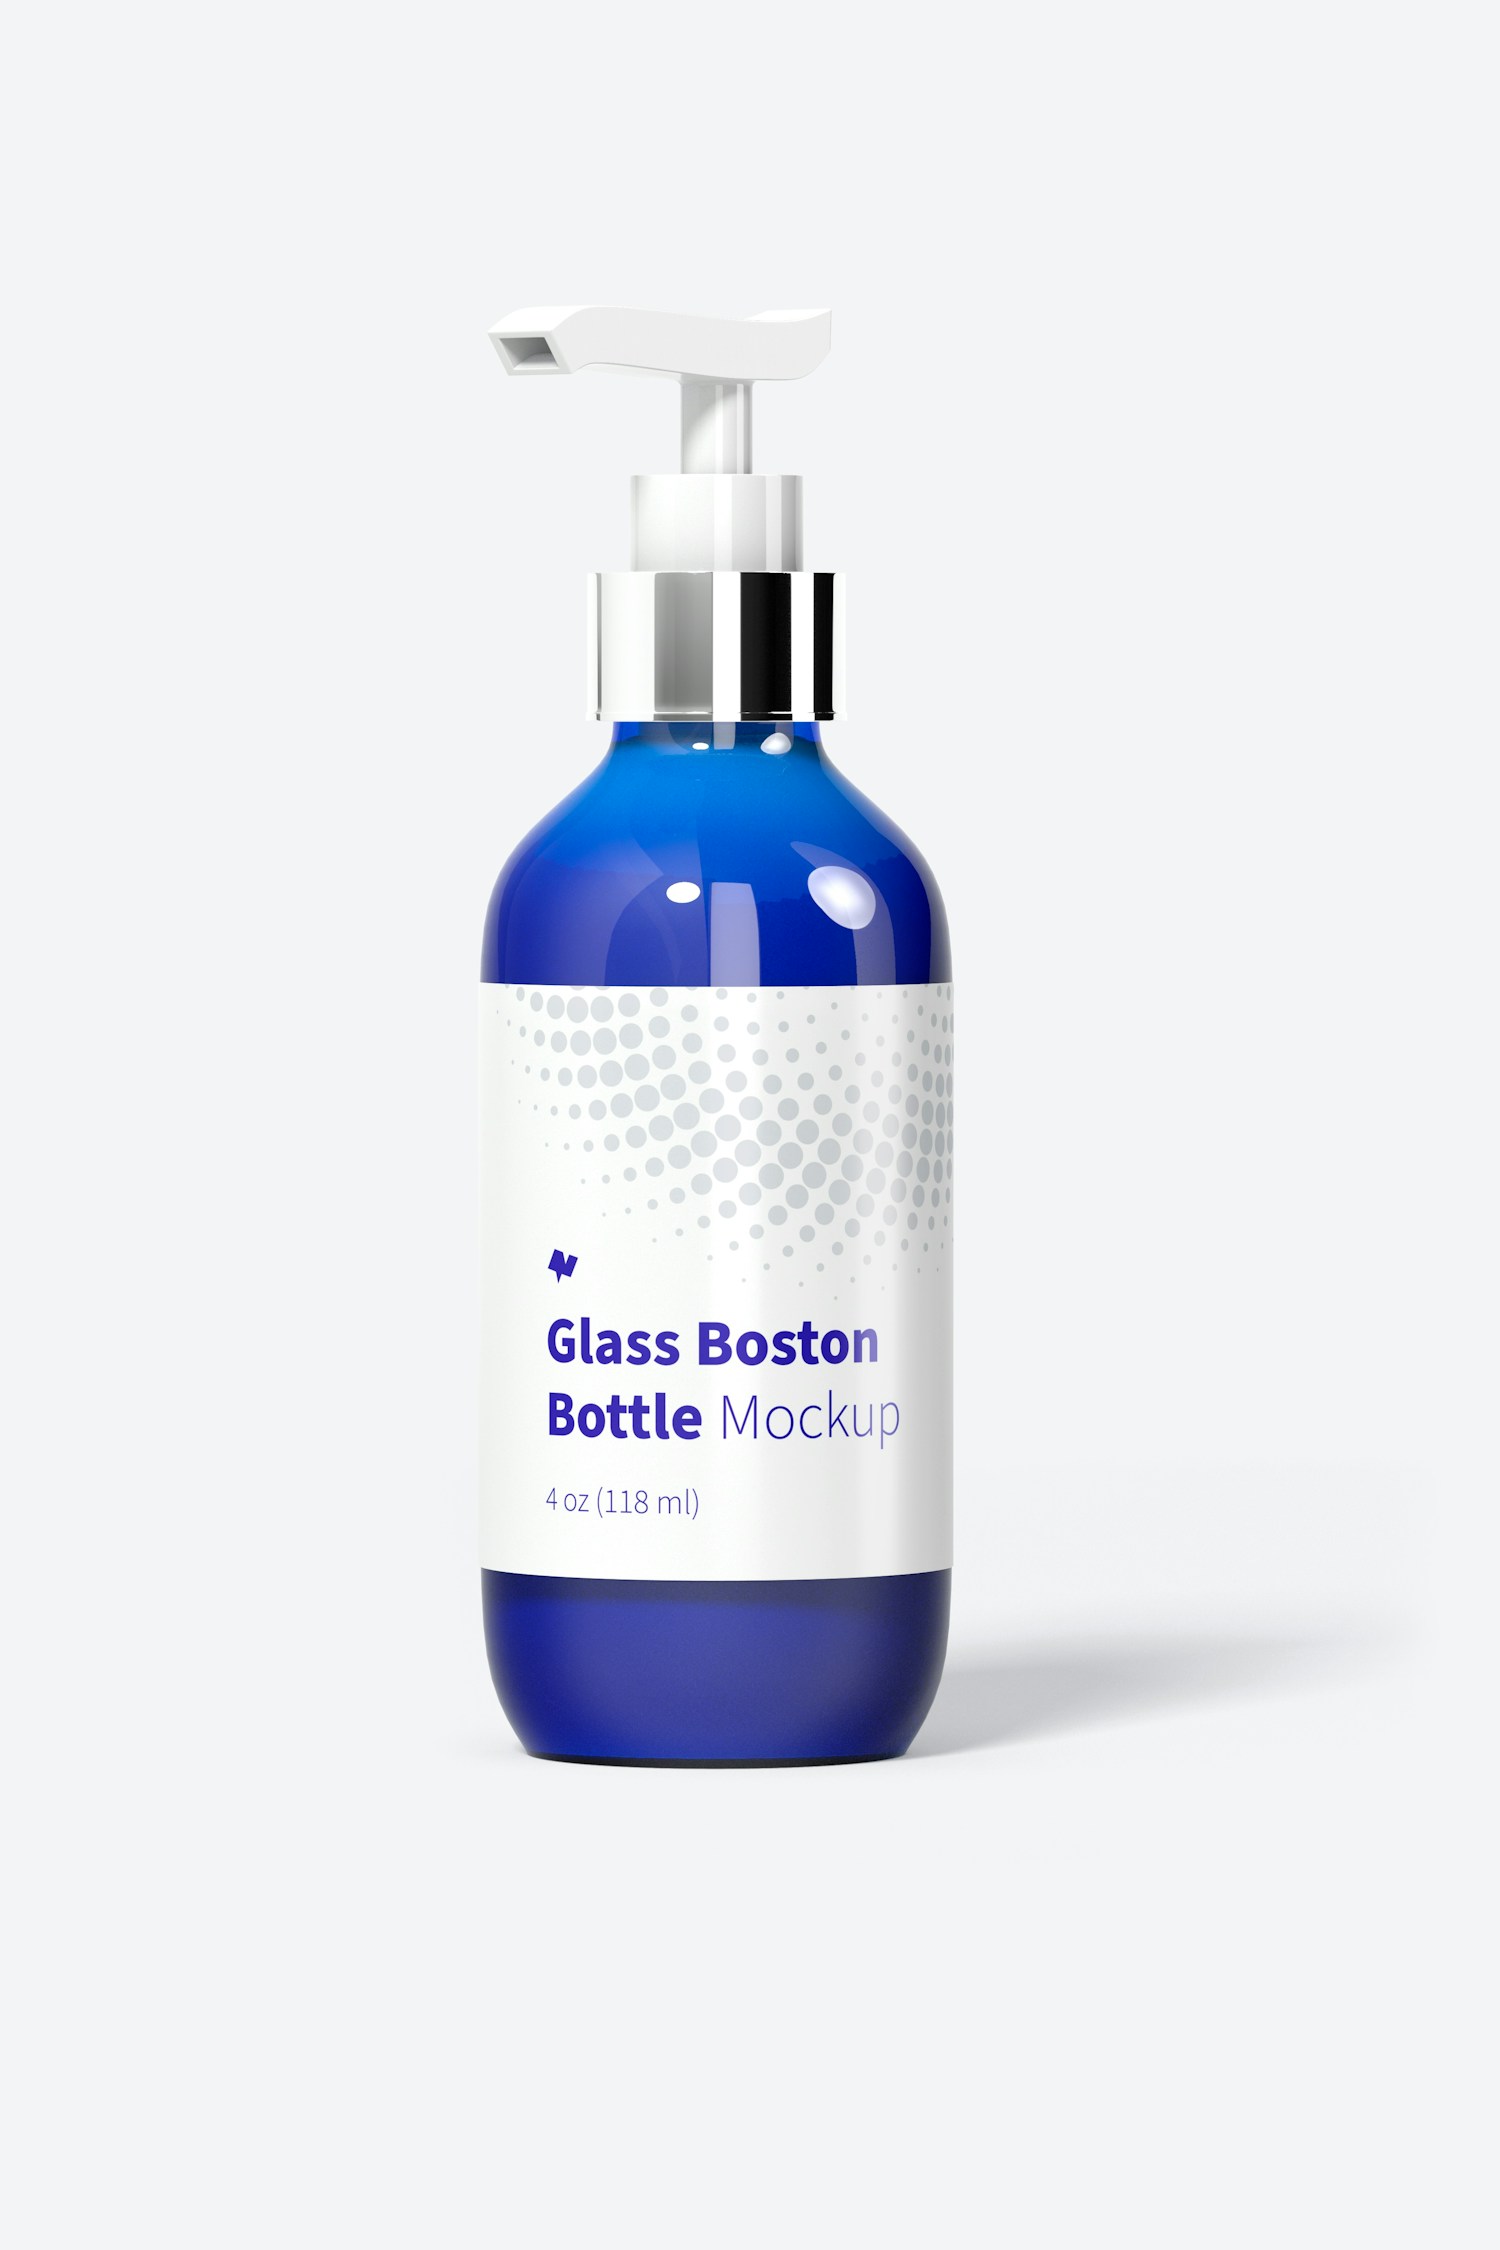 Maqueta de Botella Boston de Vidrio de 4 oz